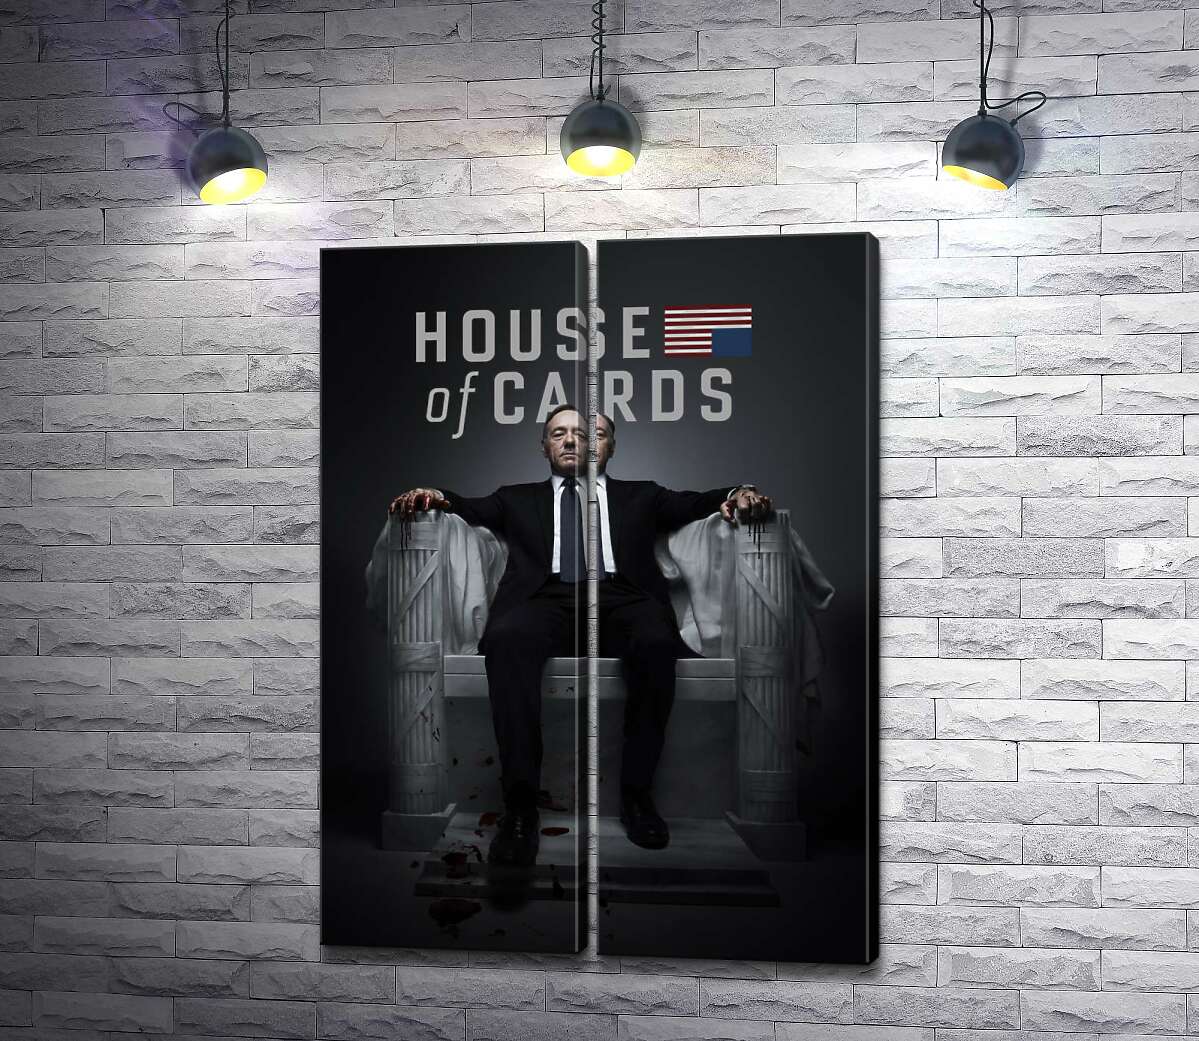 модульная картина Фрэнсис Андервуд на интригующем постере к фильму "Карточный дом" ("House of cards")